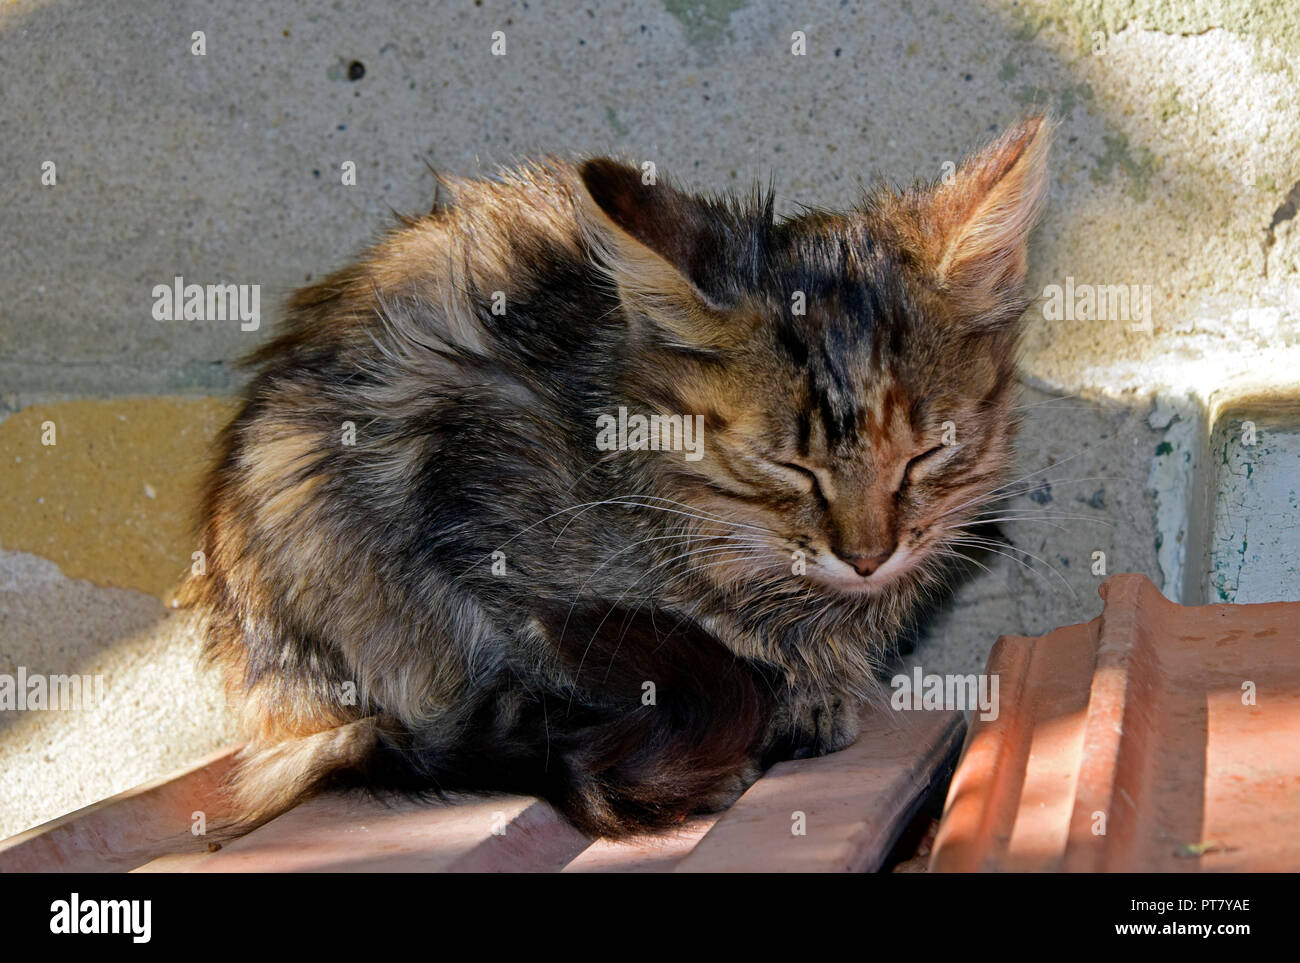 Fluffy, gris brun tabby kitten assis sur des carreaux de céramique à l'ombre partielle et somnoler Banque D'Images